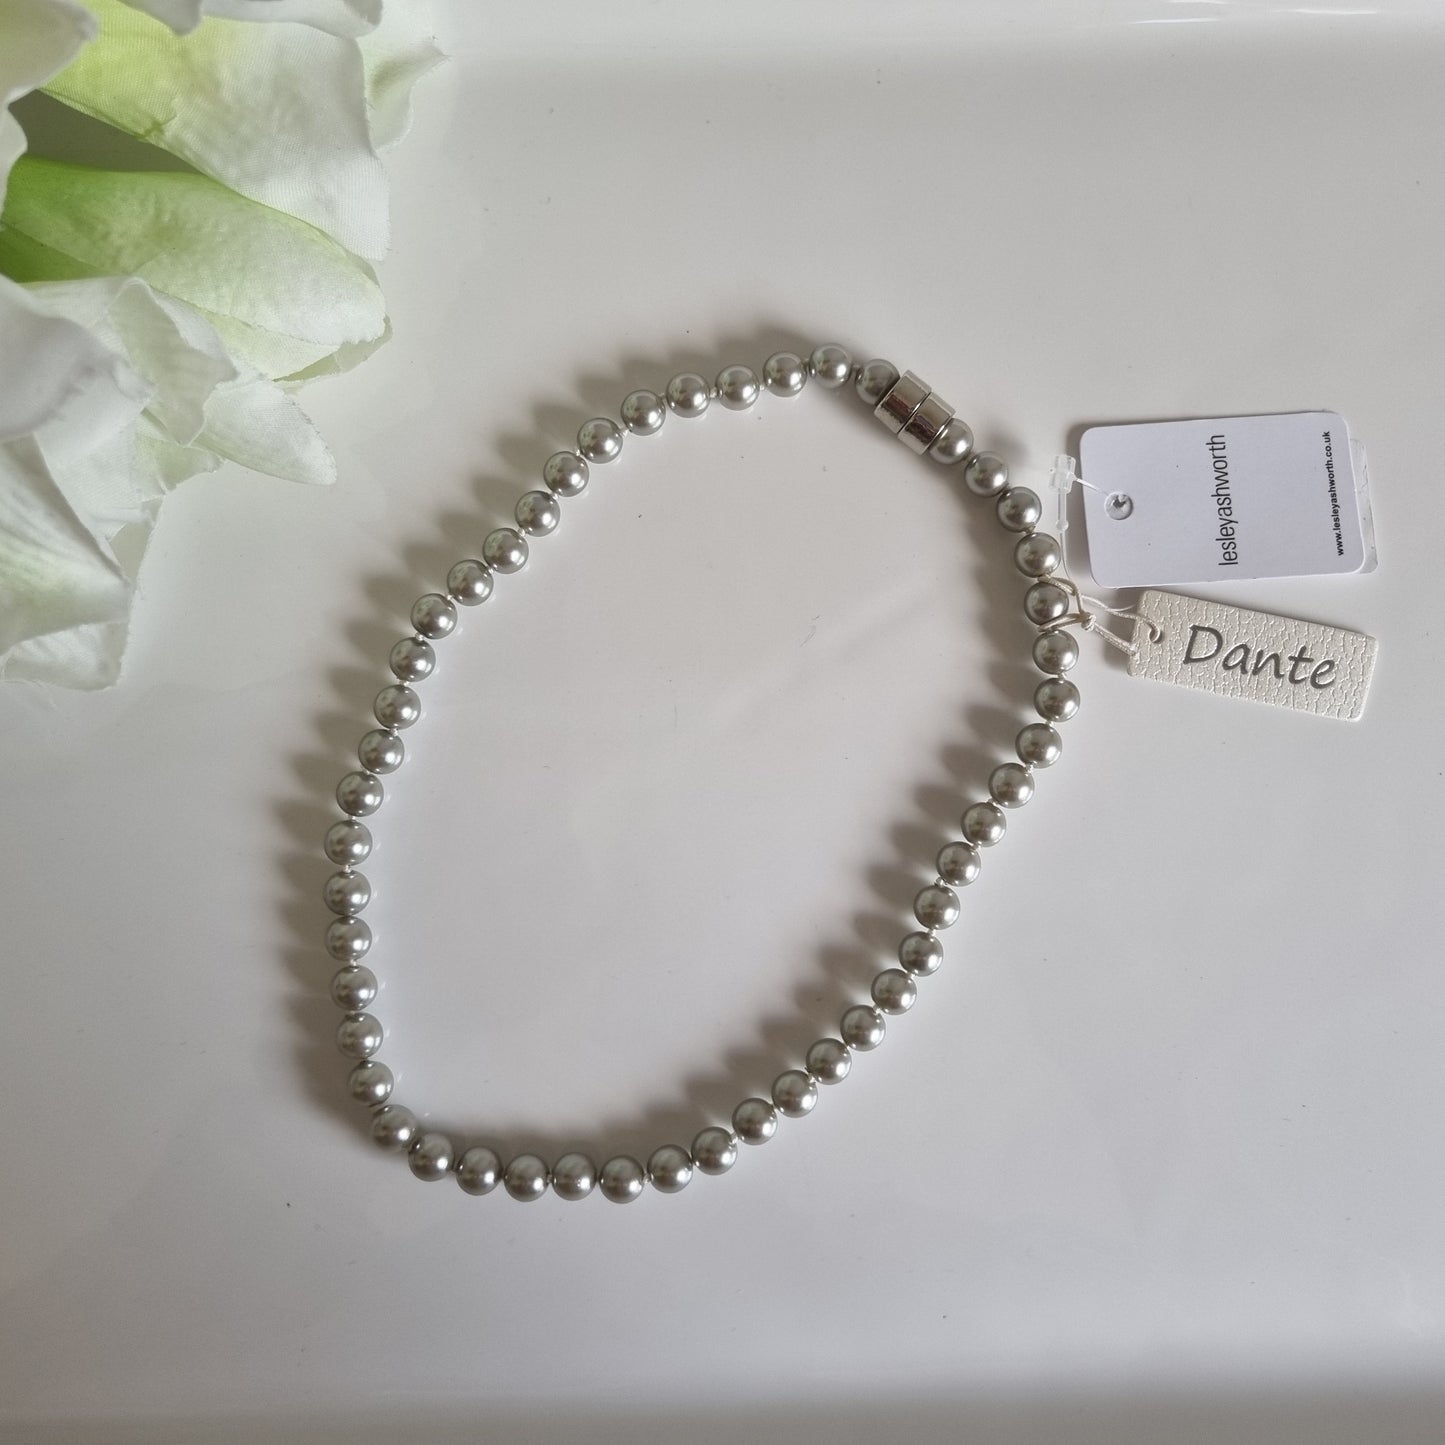 Dante silver pearl necklace